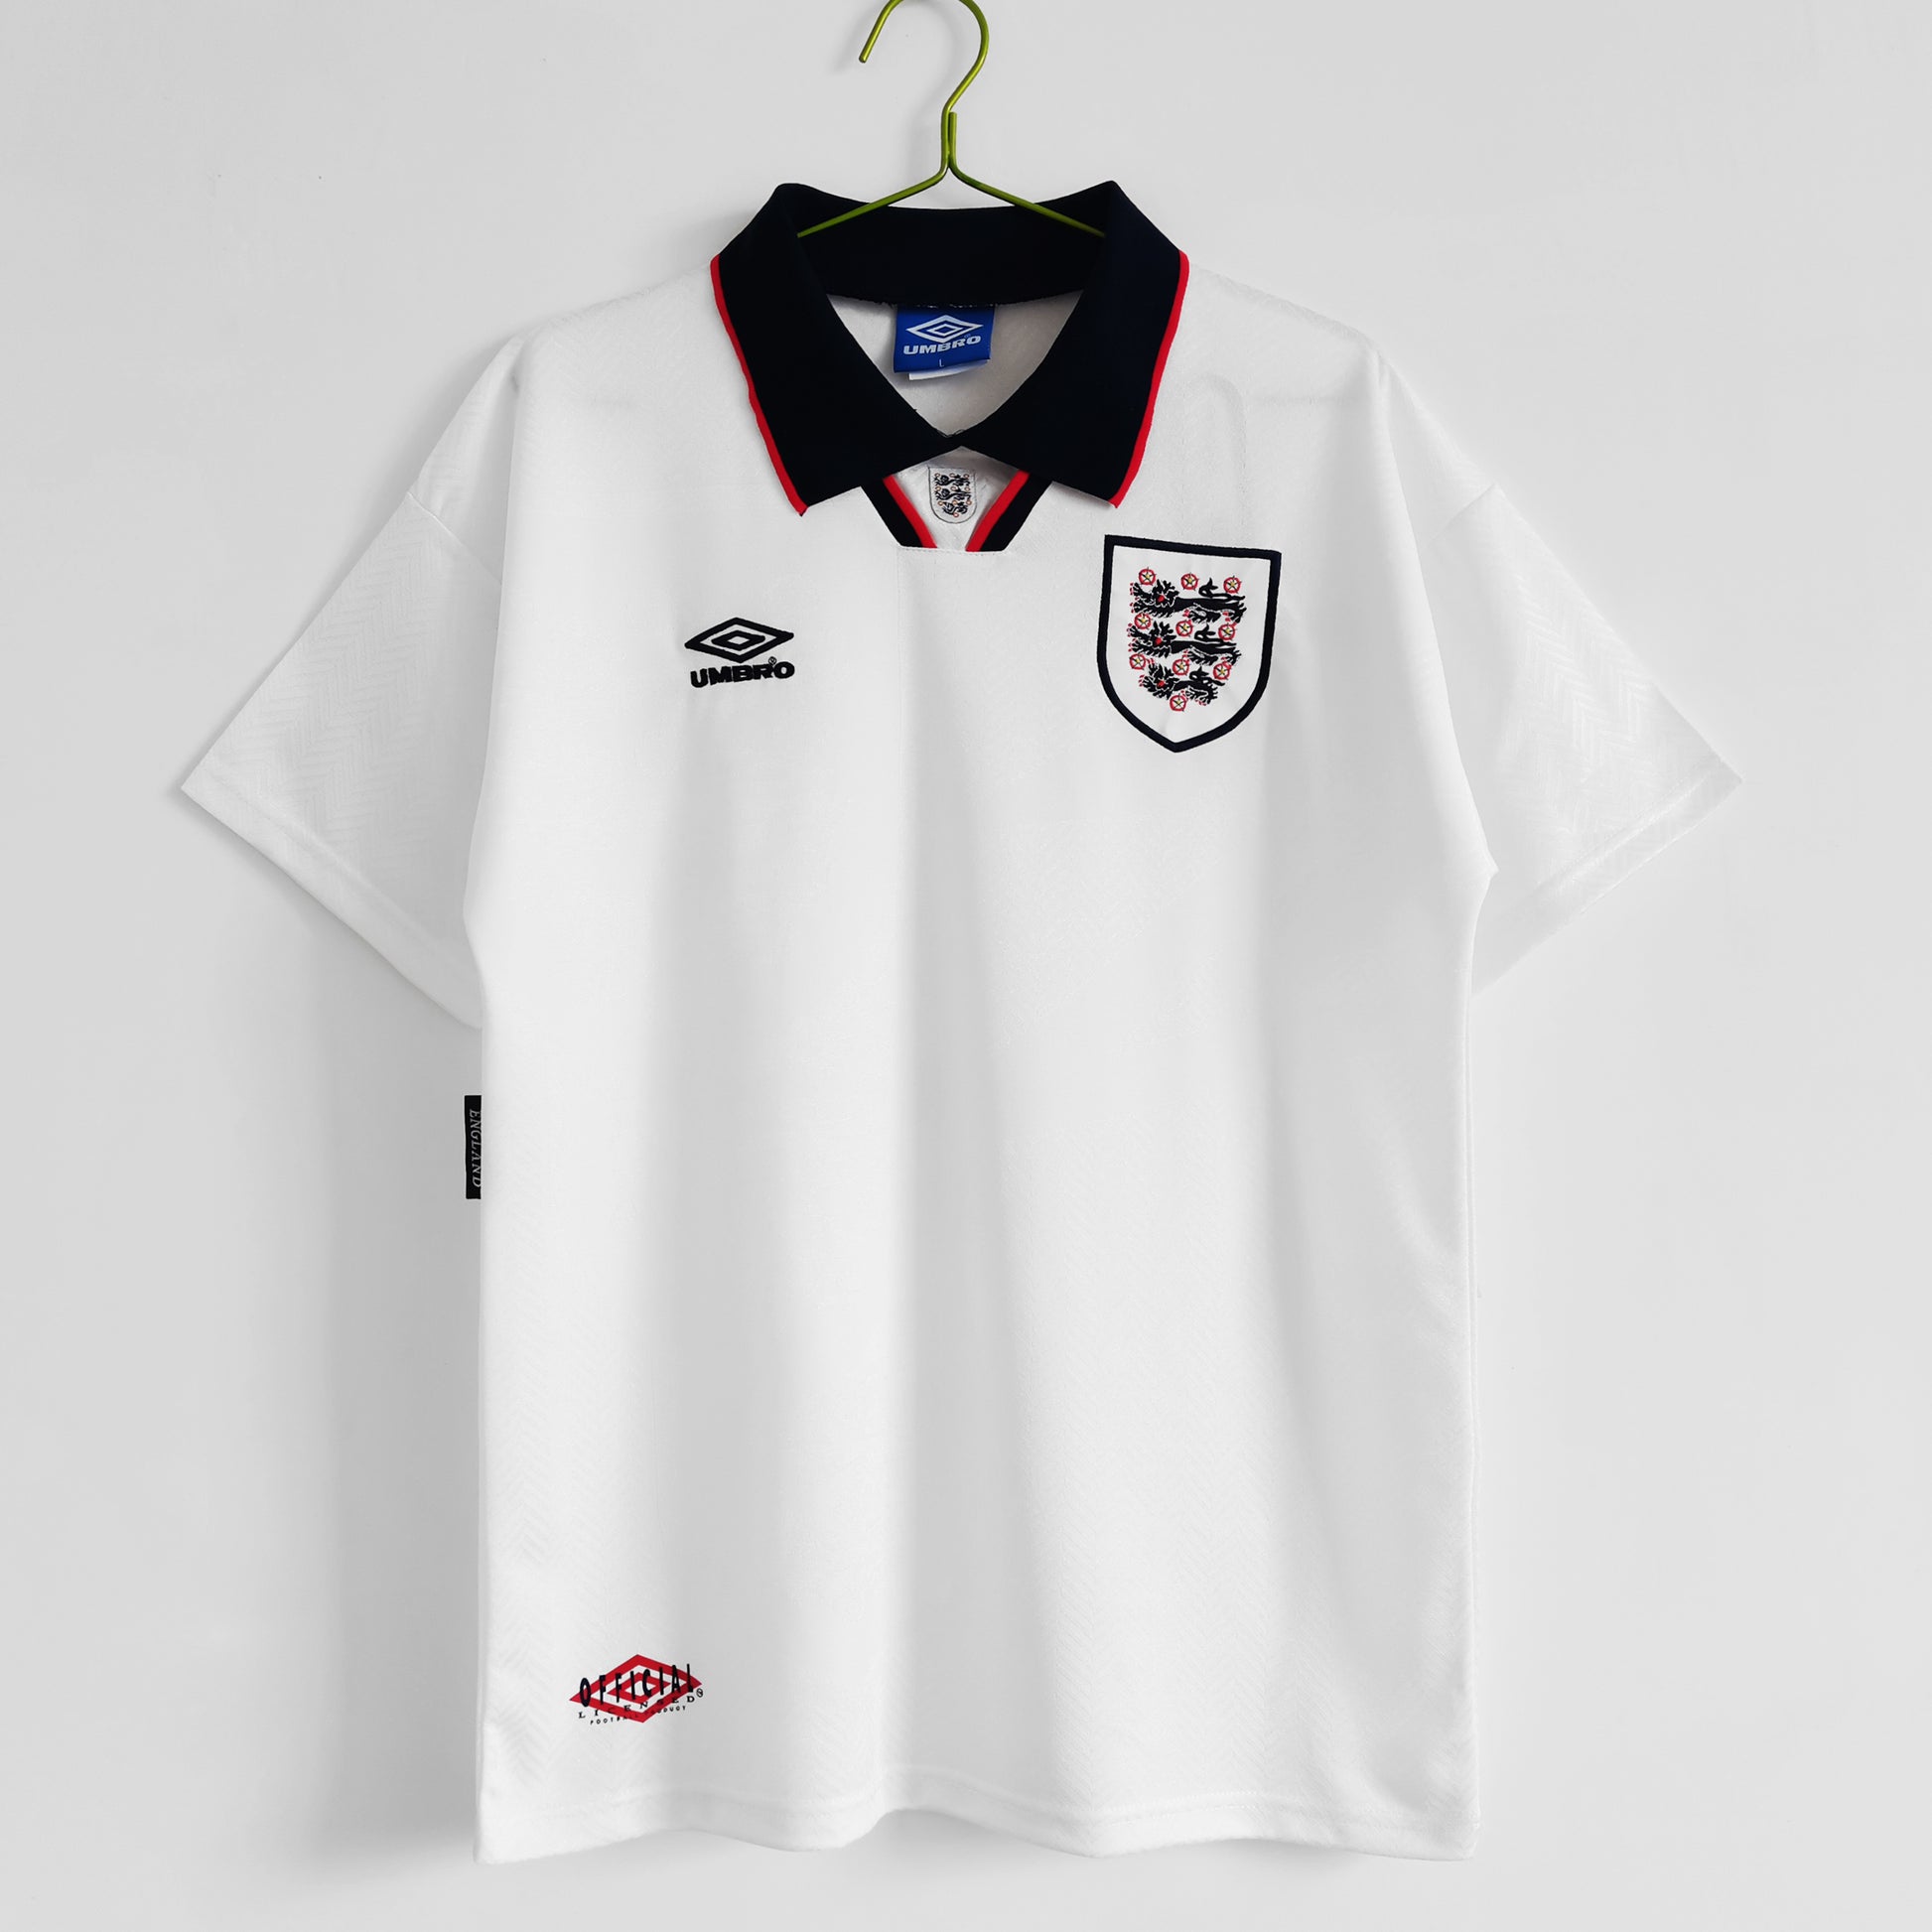 1994 England Home Retro Kit